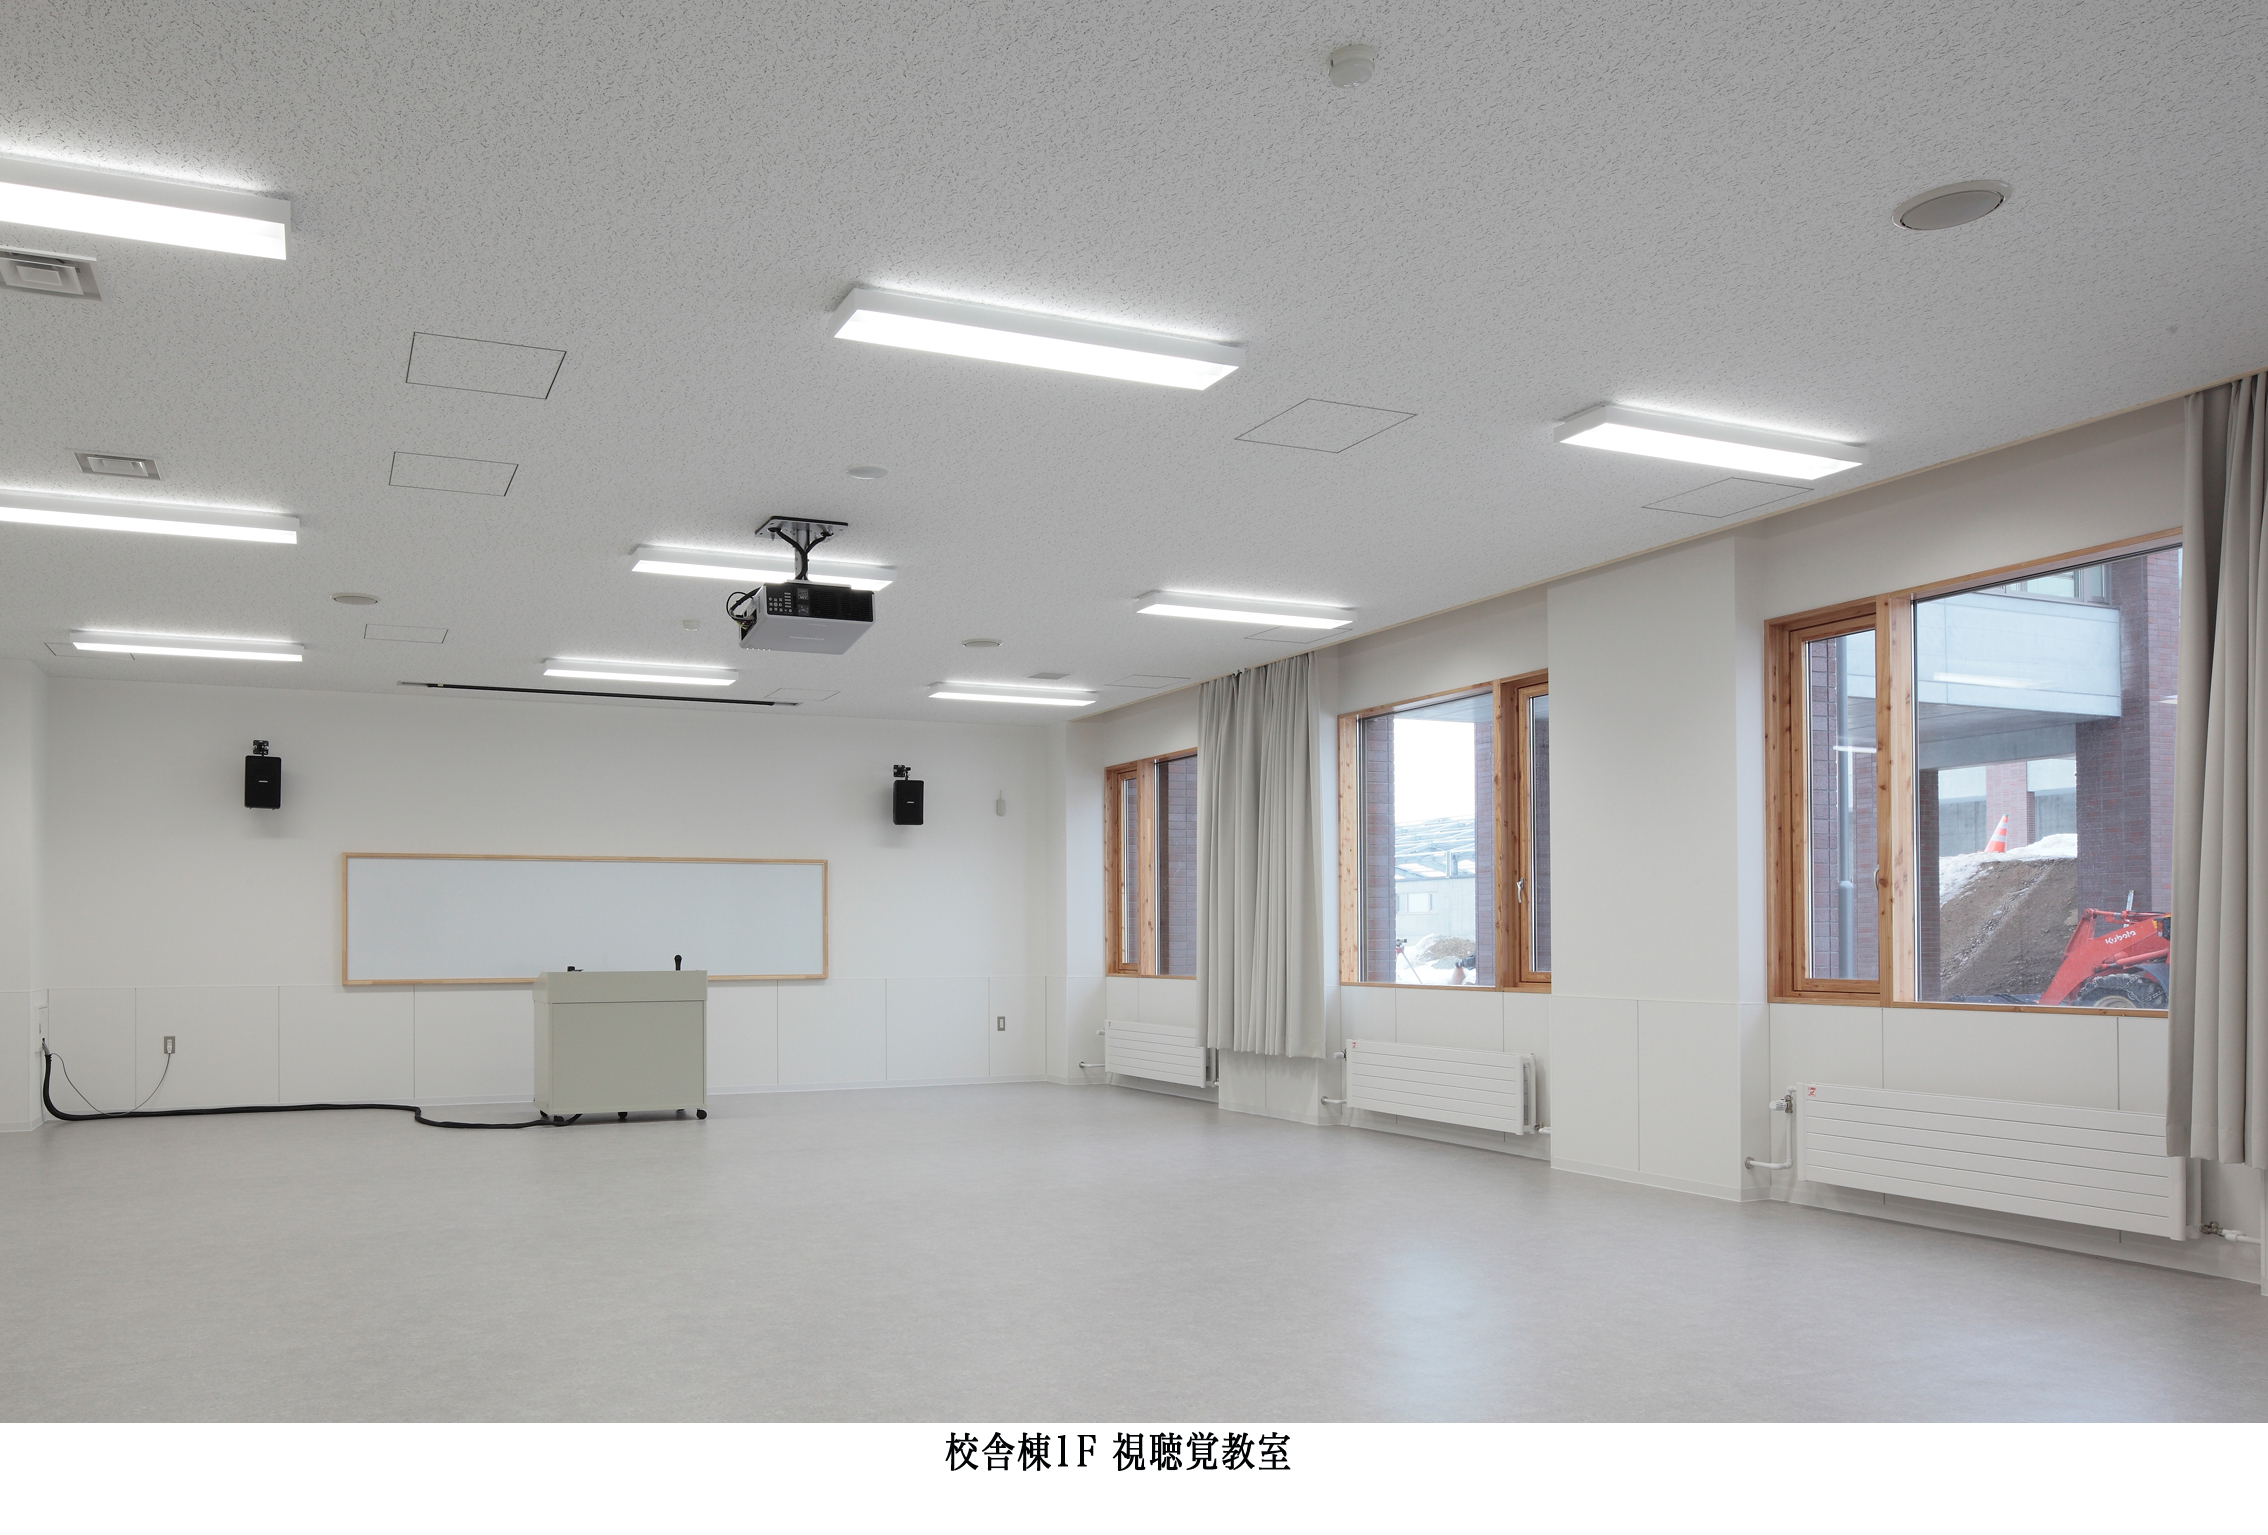 北海道小樽高等支援学校校舎棟新築工事（第３工区）